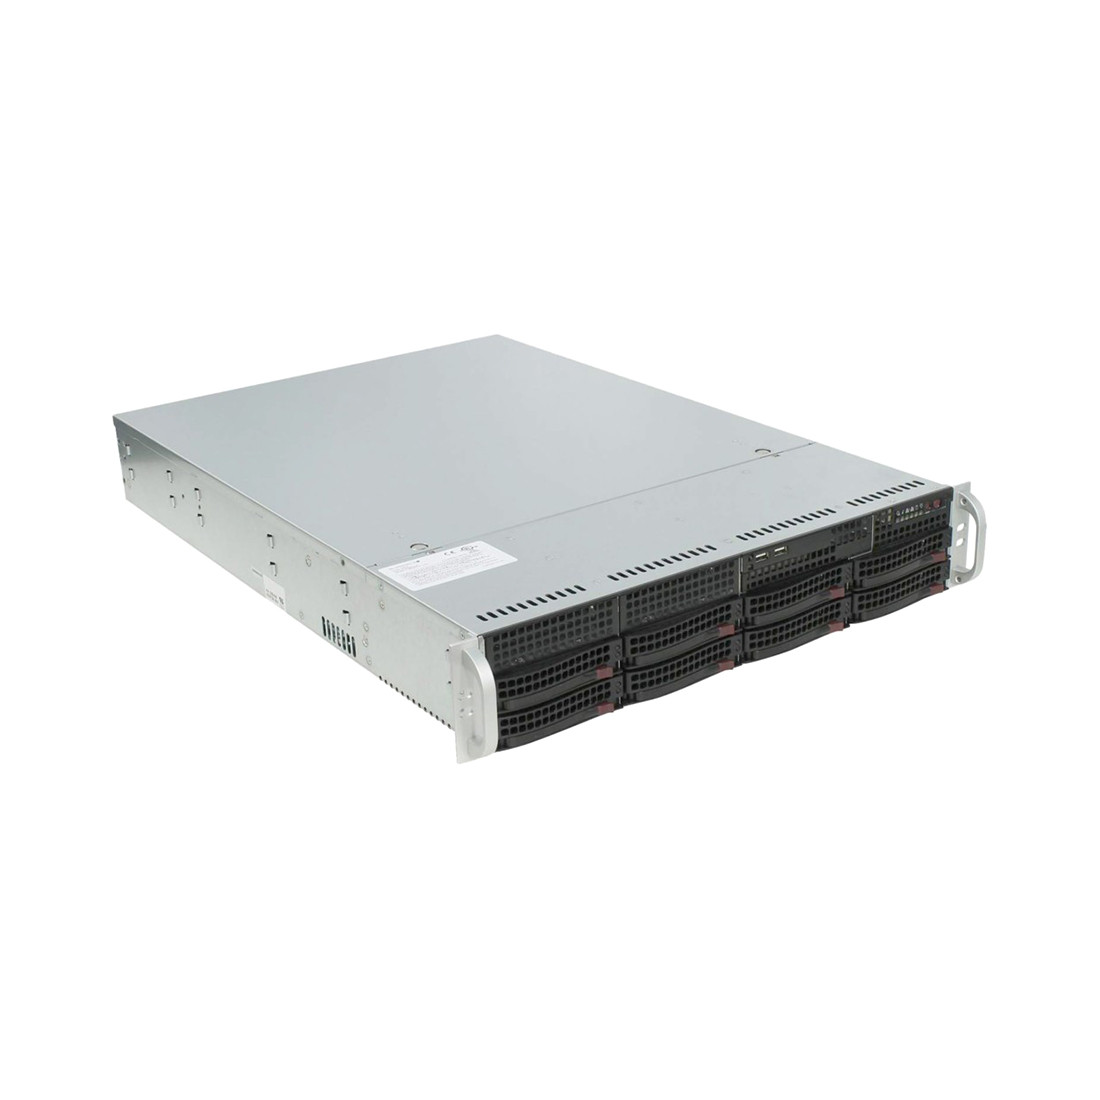 Серверный комплект SUPERMICRO SYS-620P-TR "Мощь и надежность в одном"